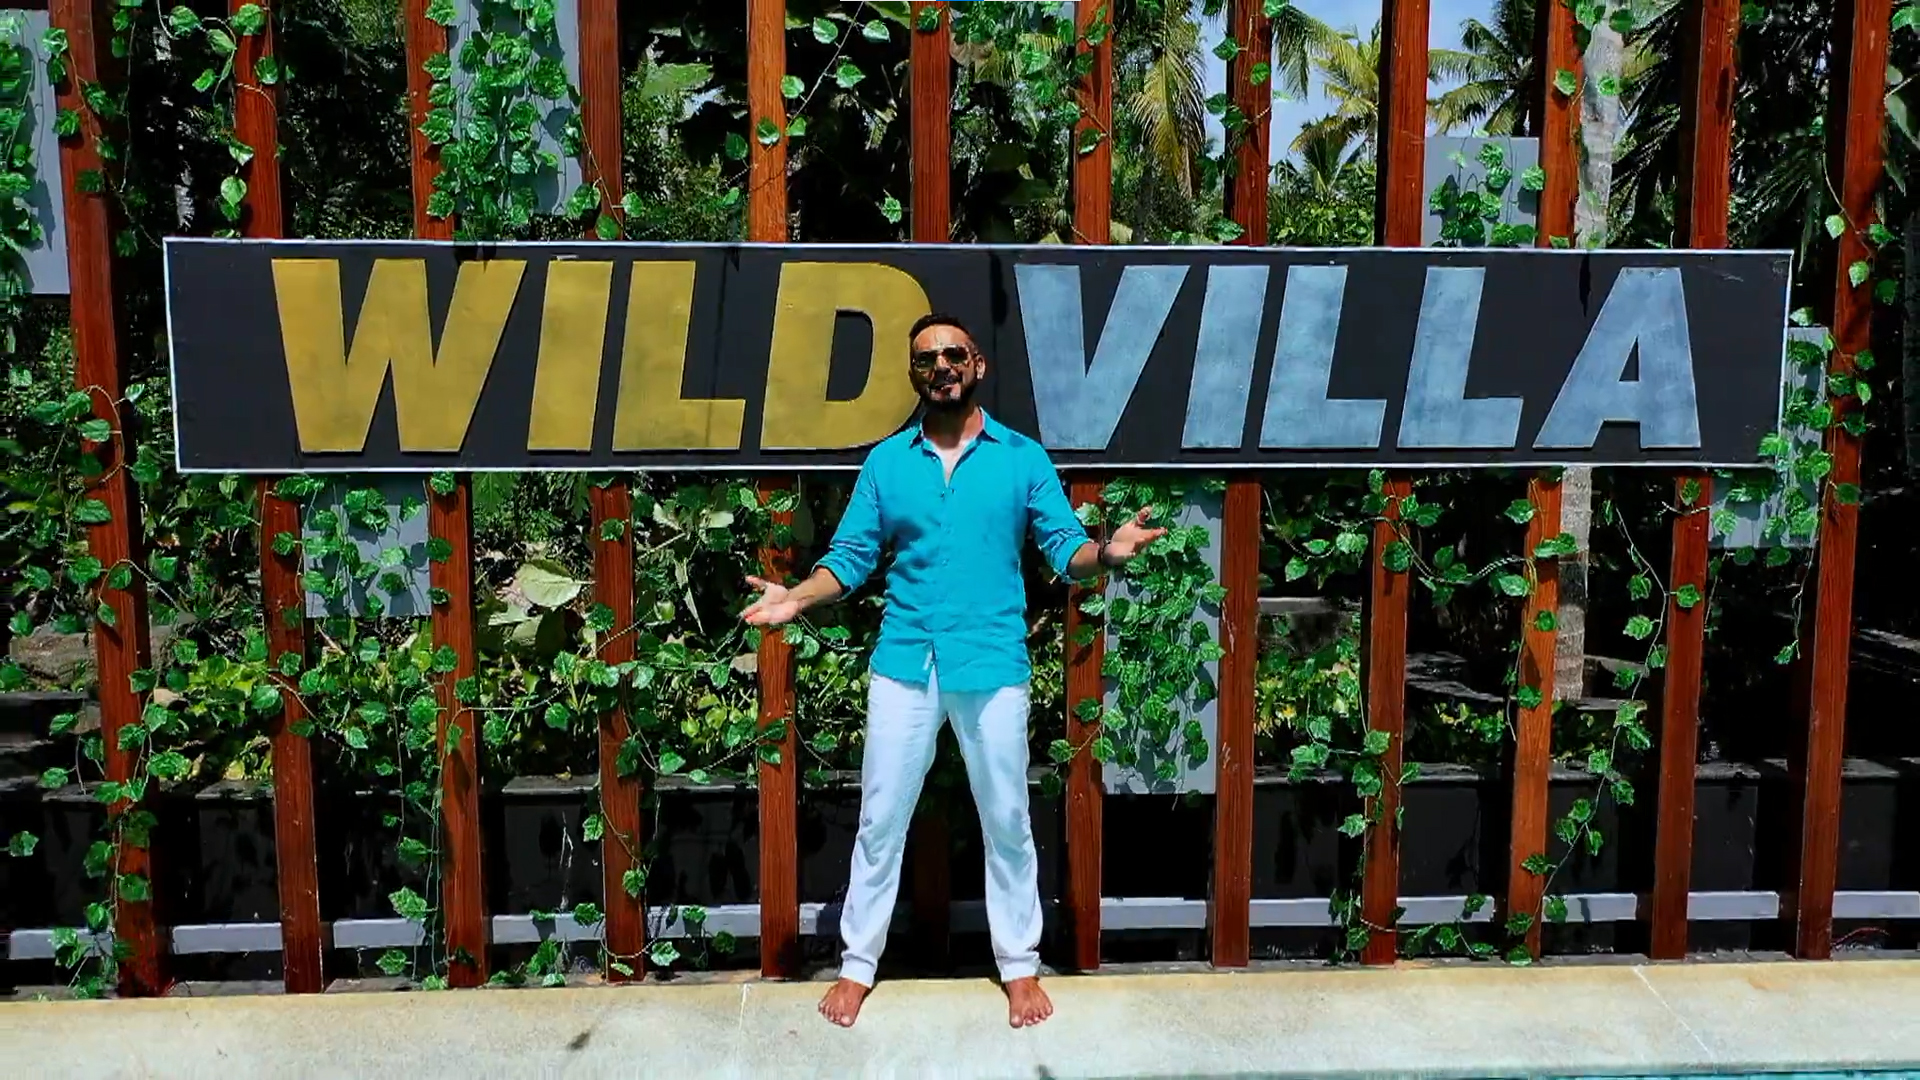 MTV Wild Villa